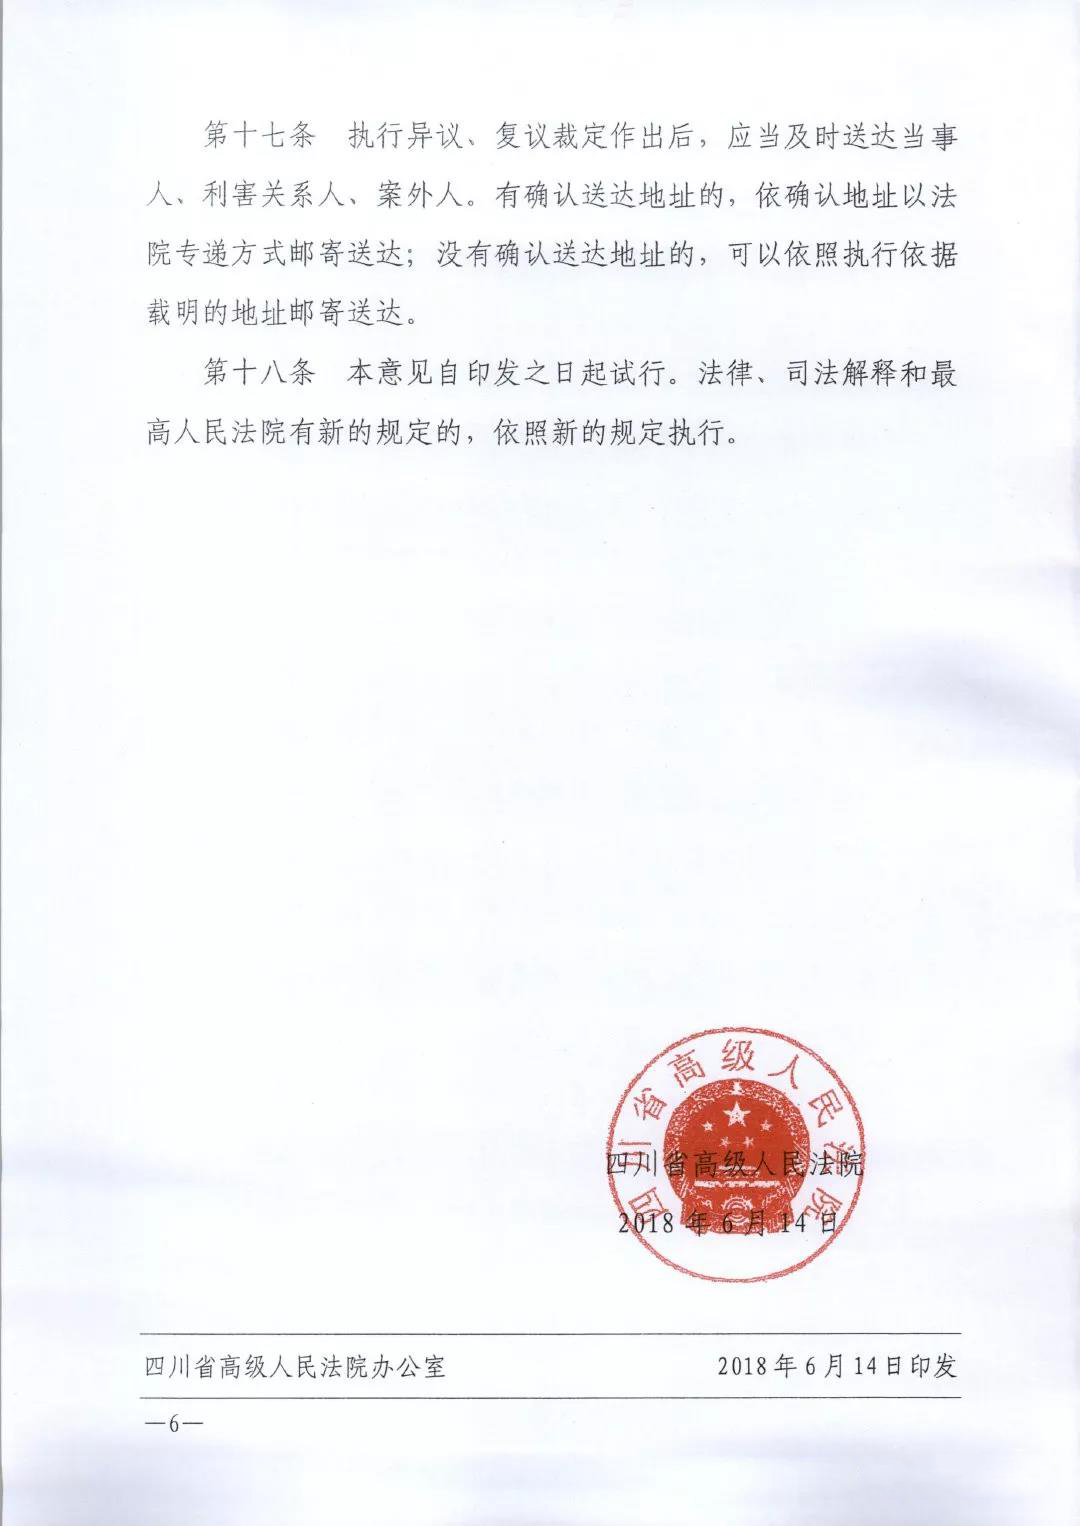 四川省高级人民法院关于规范执行异议、复议案件办理工作的意见【川高法〔2018〕155号】